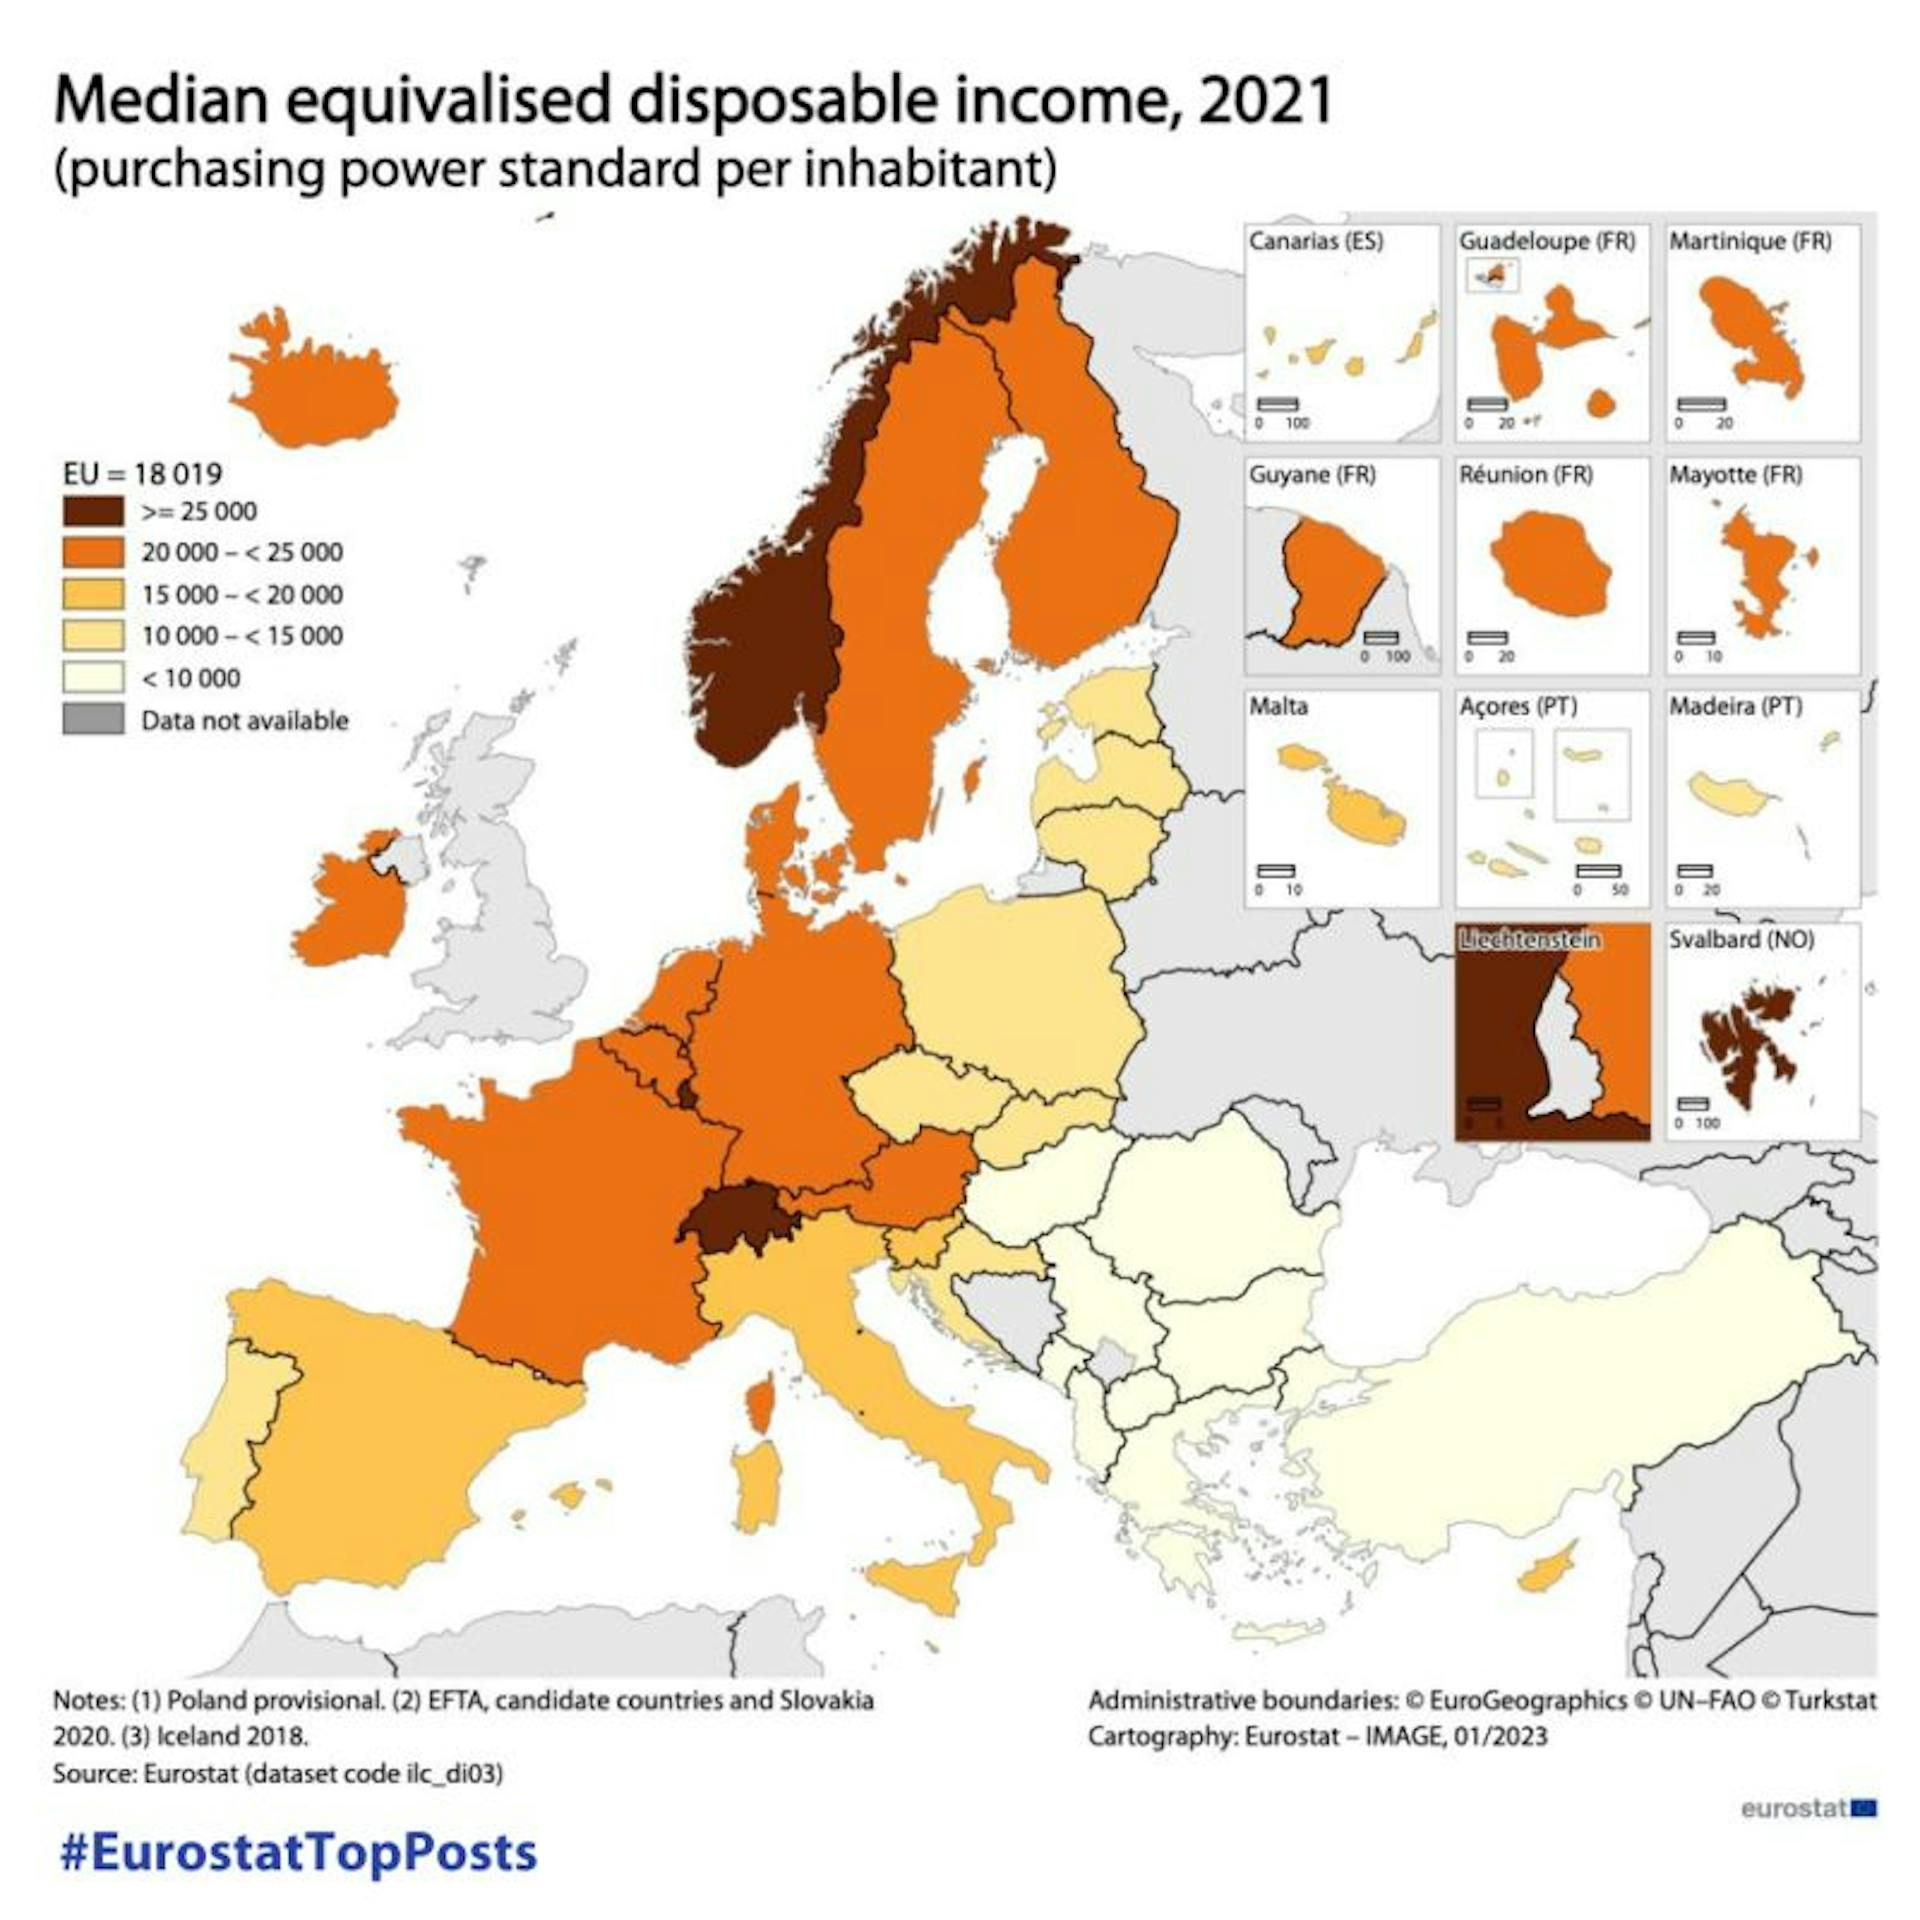 En 2021, le revenu disponible médian était de 18 019 SPA (norme de pouvoir d'achat) par habitant dans l'UE.